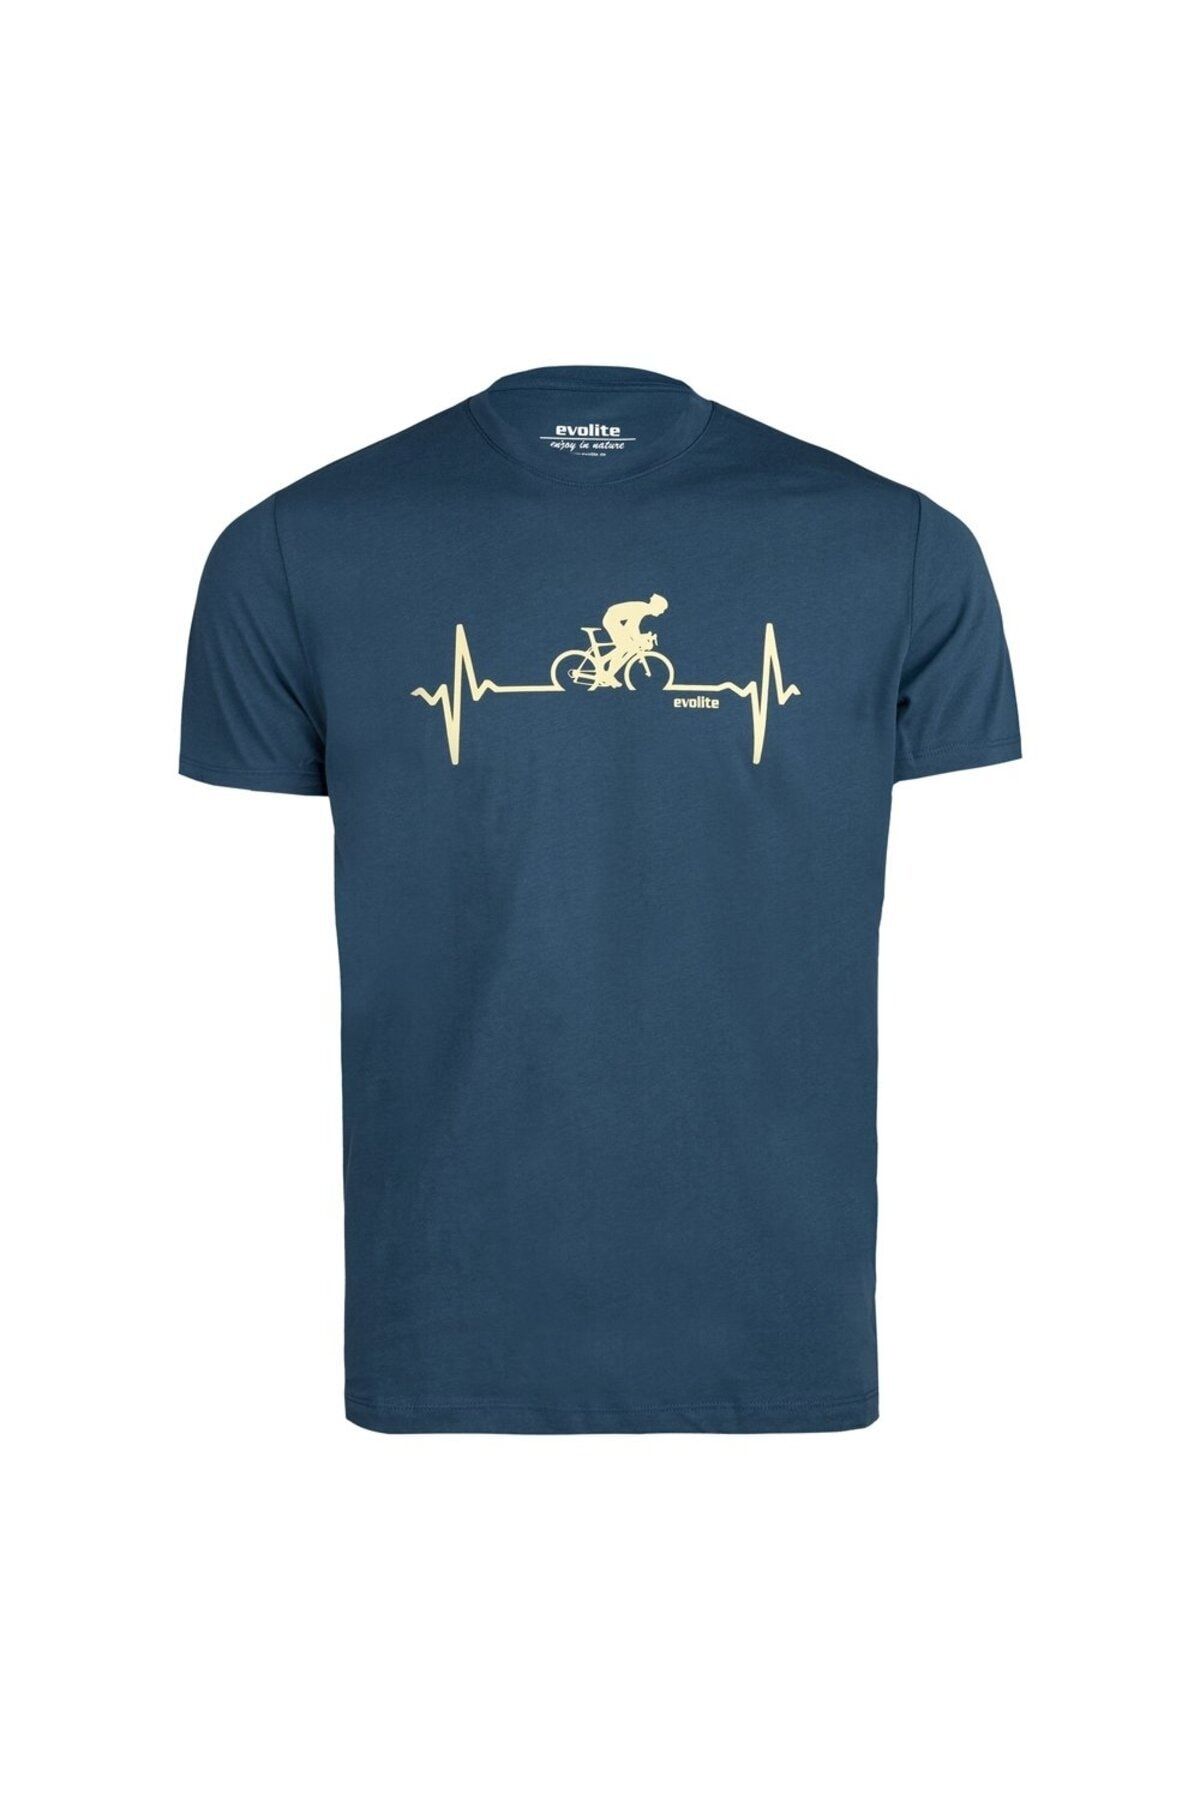 Evolite Cycling T-Shirt [Turkuaz]